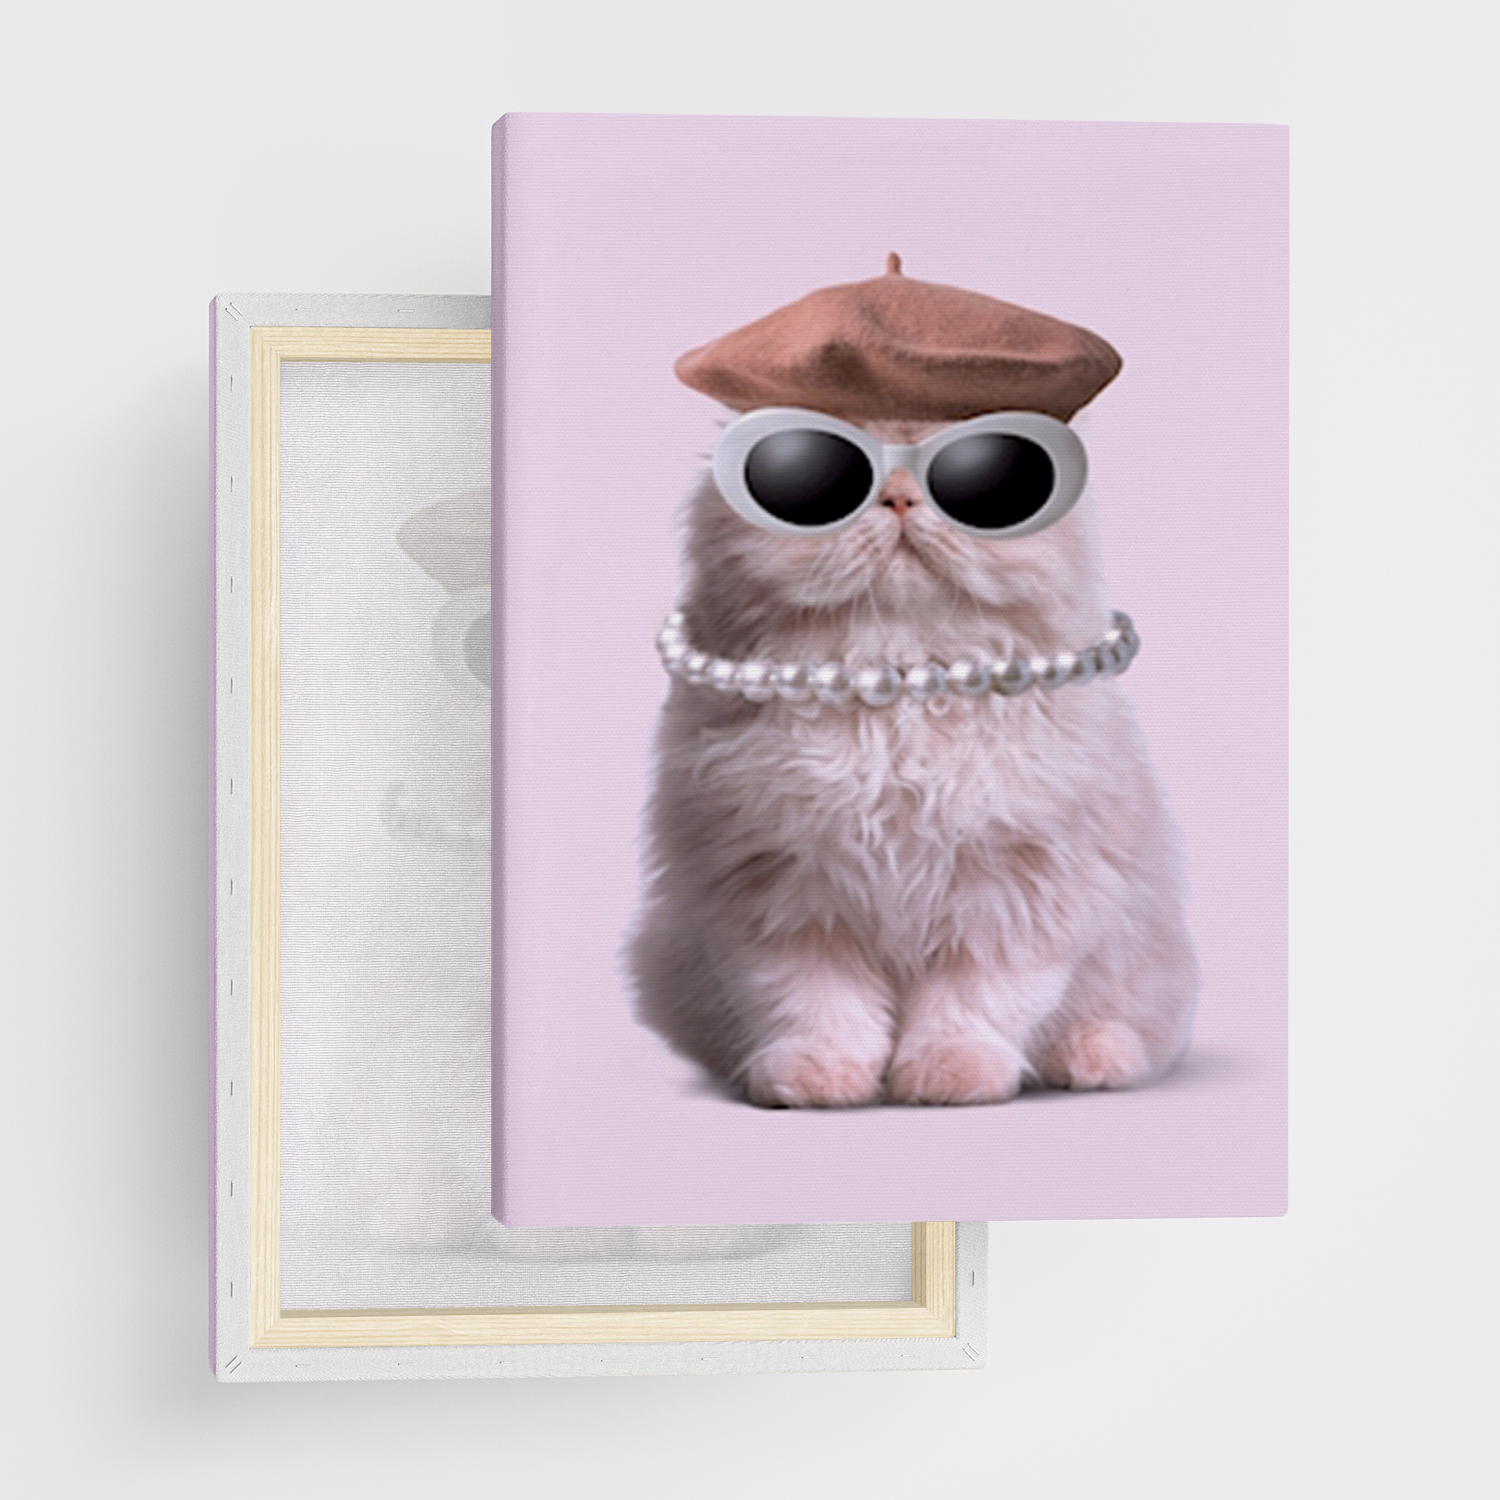 Leinwandbild "Mode Katze" von Printler